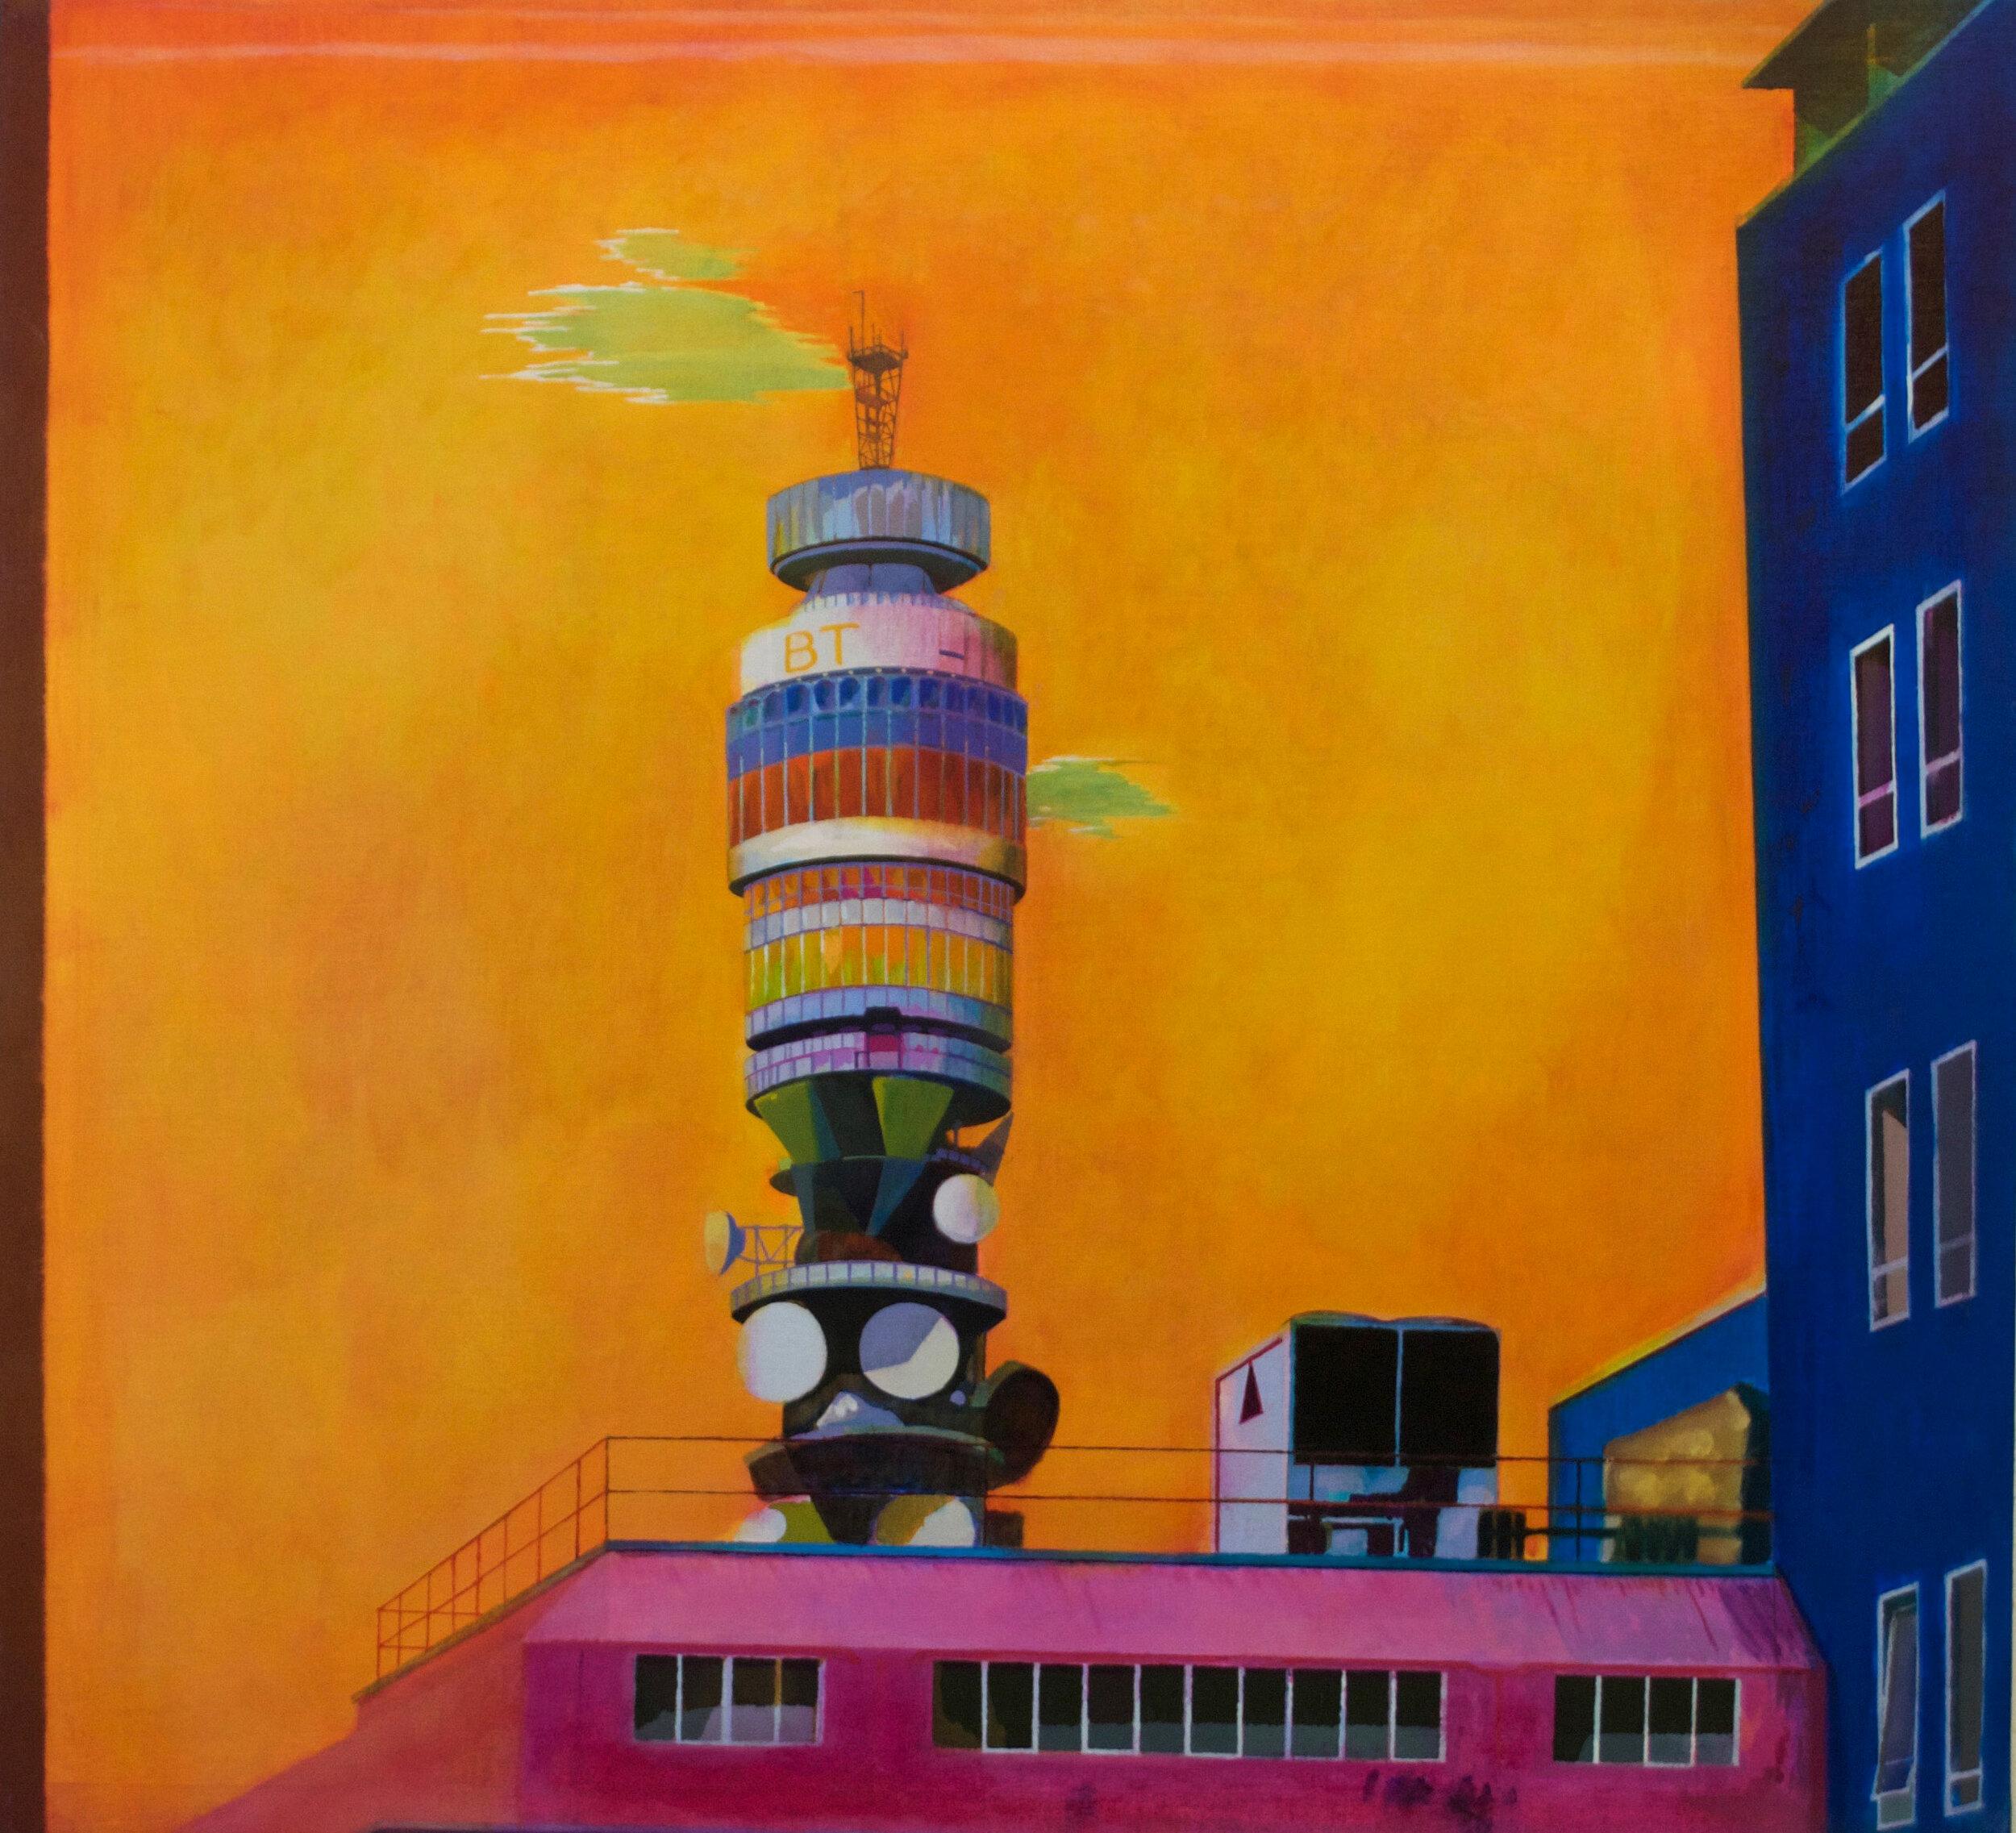  Post Office Tower  (Strange Light)  Oil on Linen on Panel  84cm x 92cm  2008   